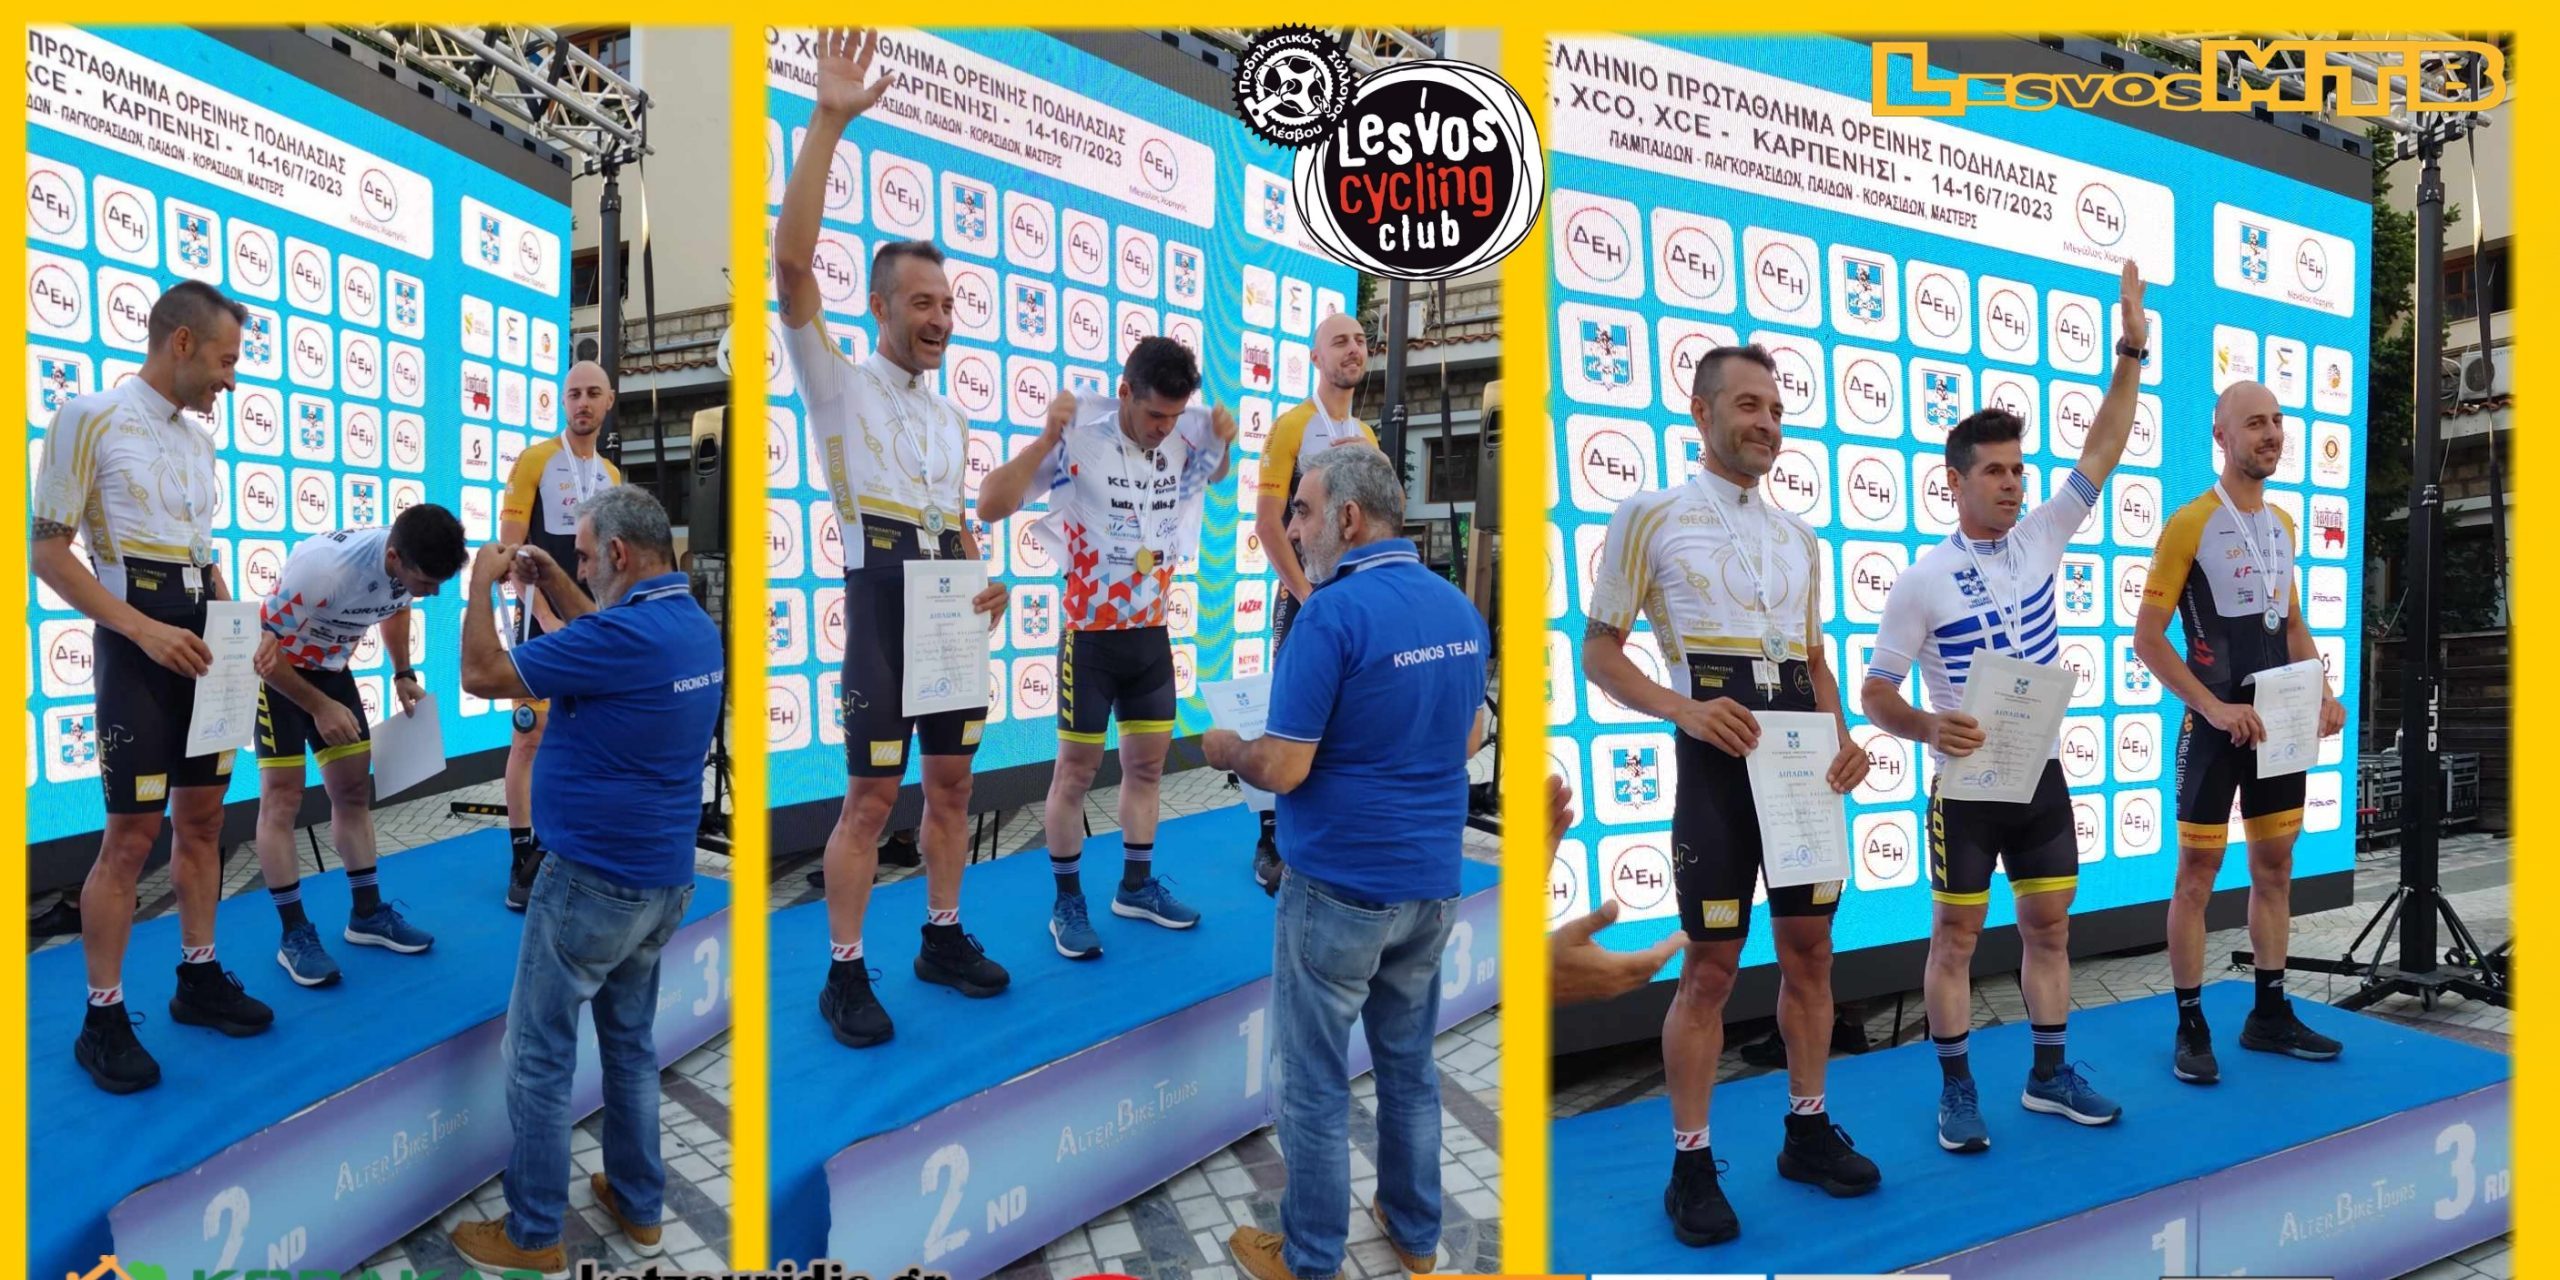 Ποδηλατικός Σύλλογος Λέσβου: Πρωταθλητής  Ελλάδος ο Γιώργος Σαραϊδάρης